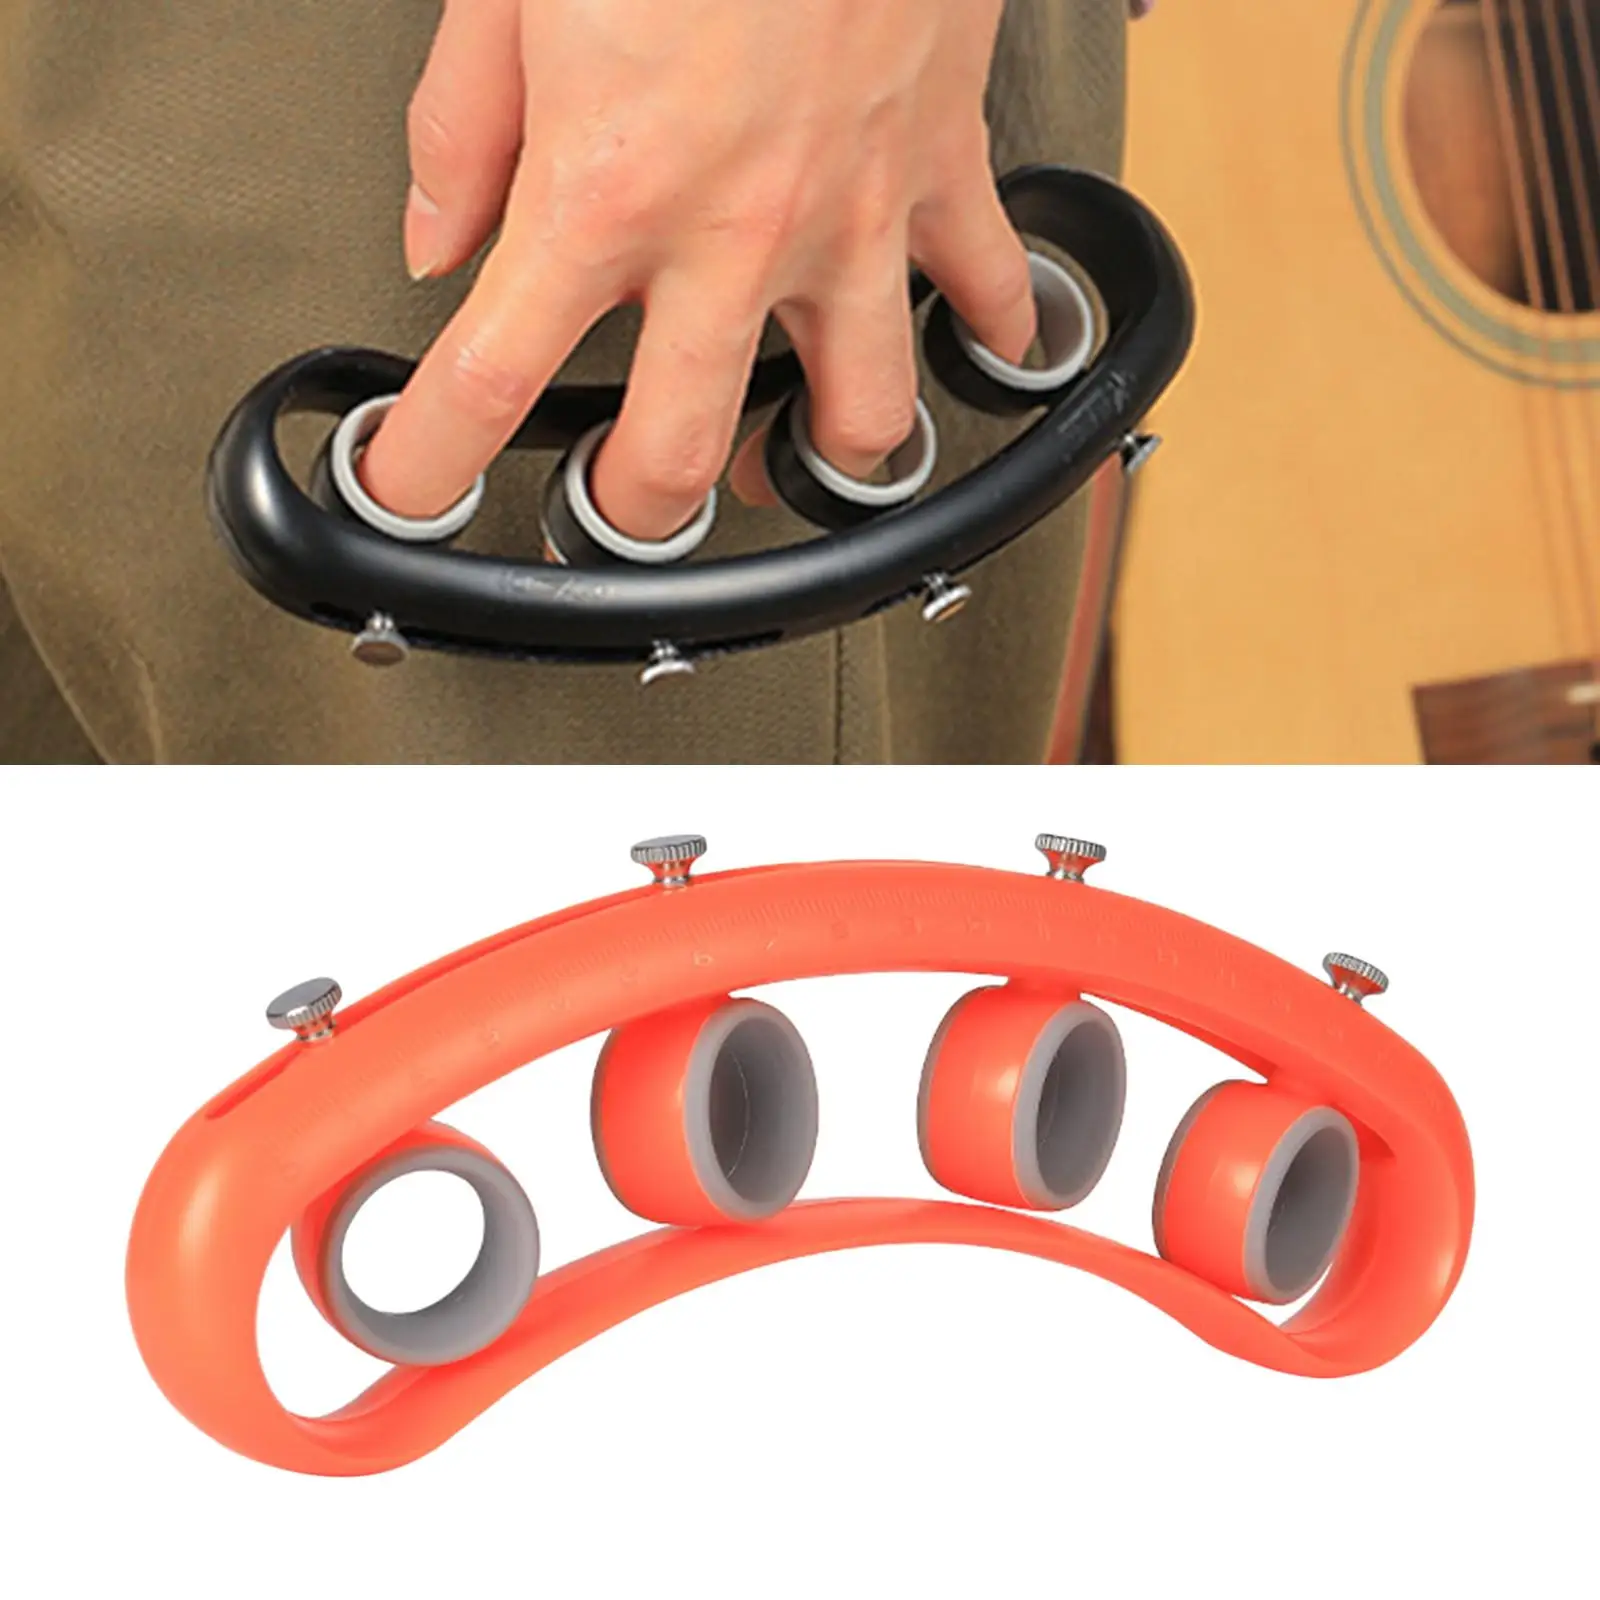 Uklele Guitar Finger Extensor Exerciser Strengthener Piano Trainer Tools